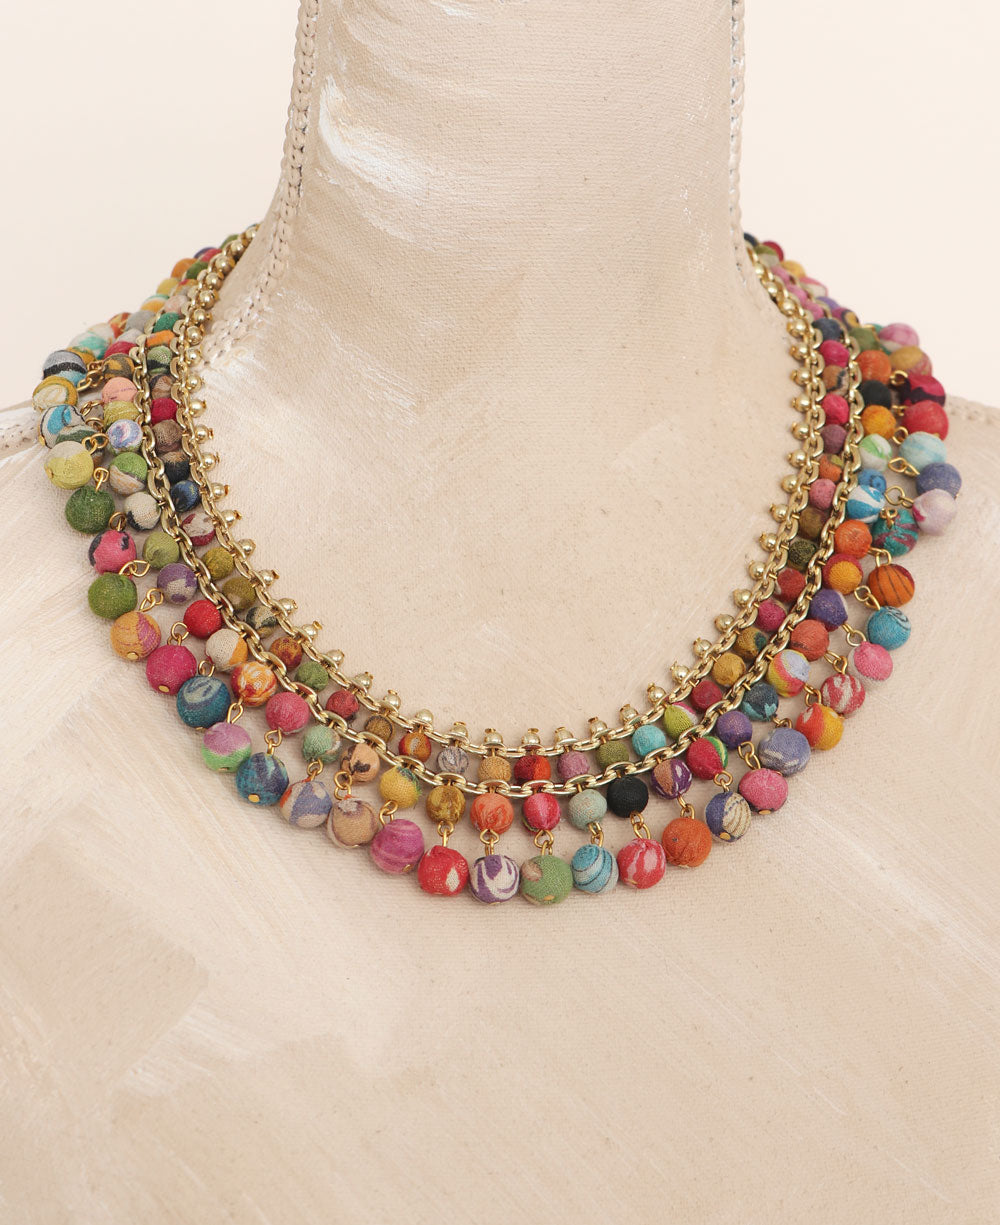 Unique Bargains Colored Beaded Necklaces Fashion Chain Necklaces